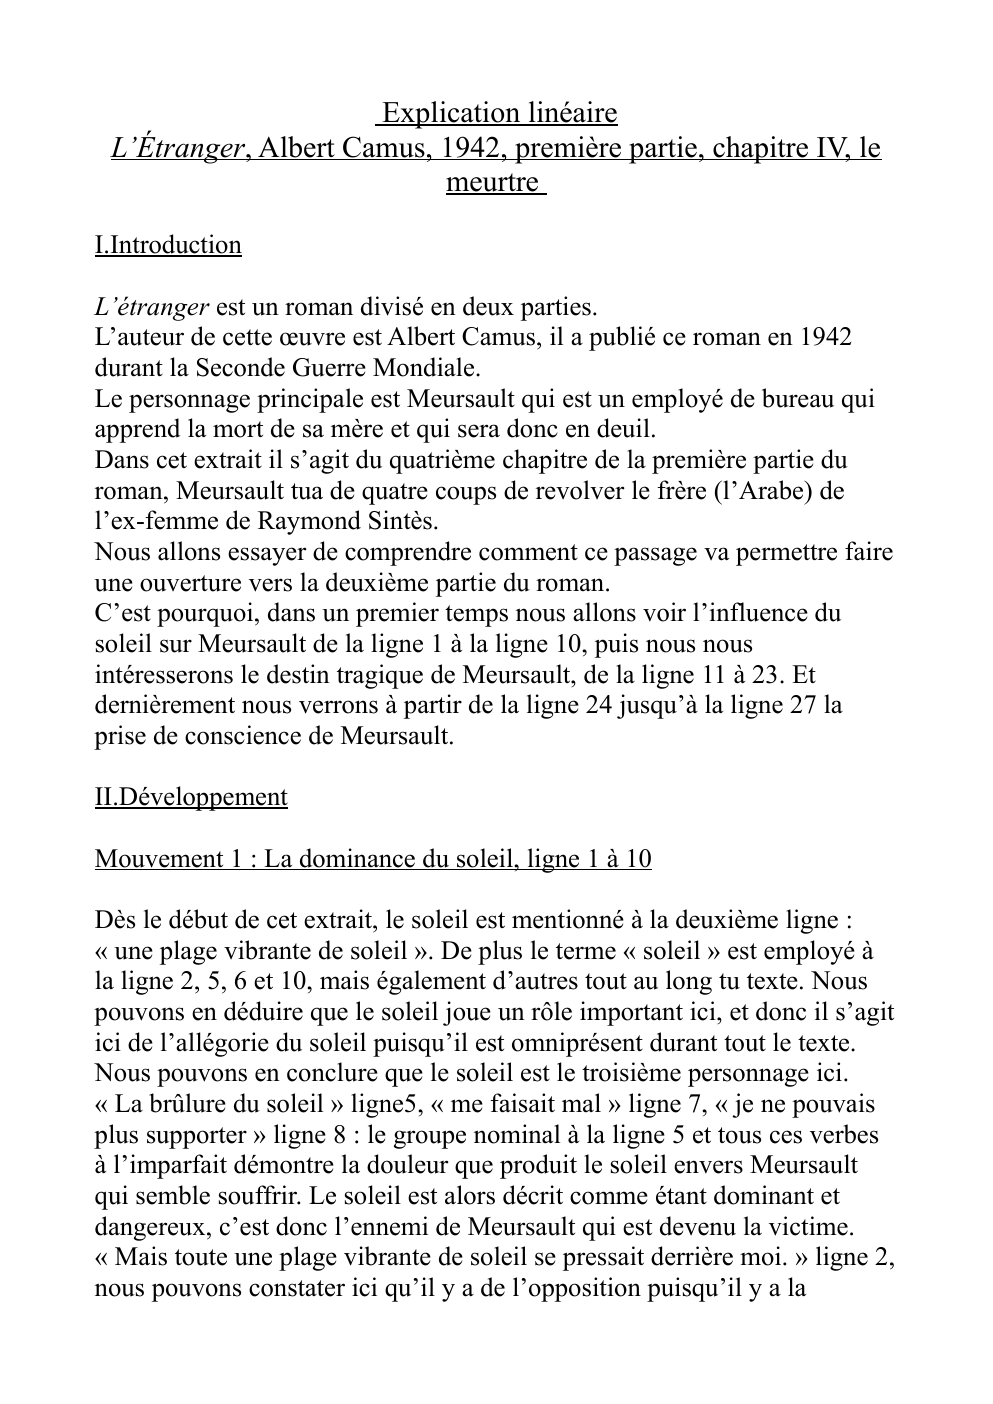 Prévisualisation du document Explication linéaire-Meutre de Meursault, L'étranger de Camus